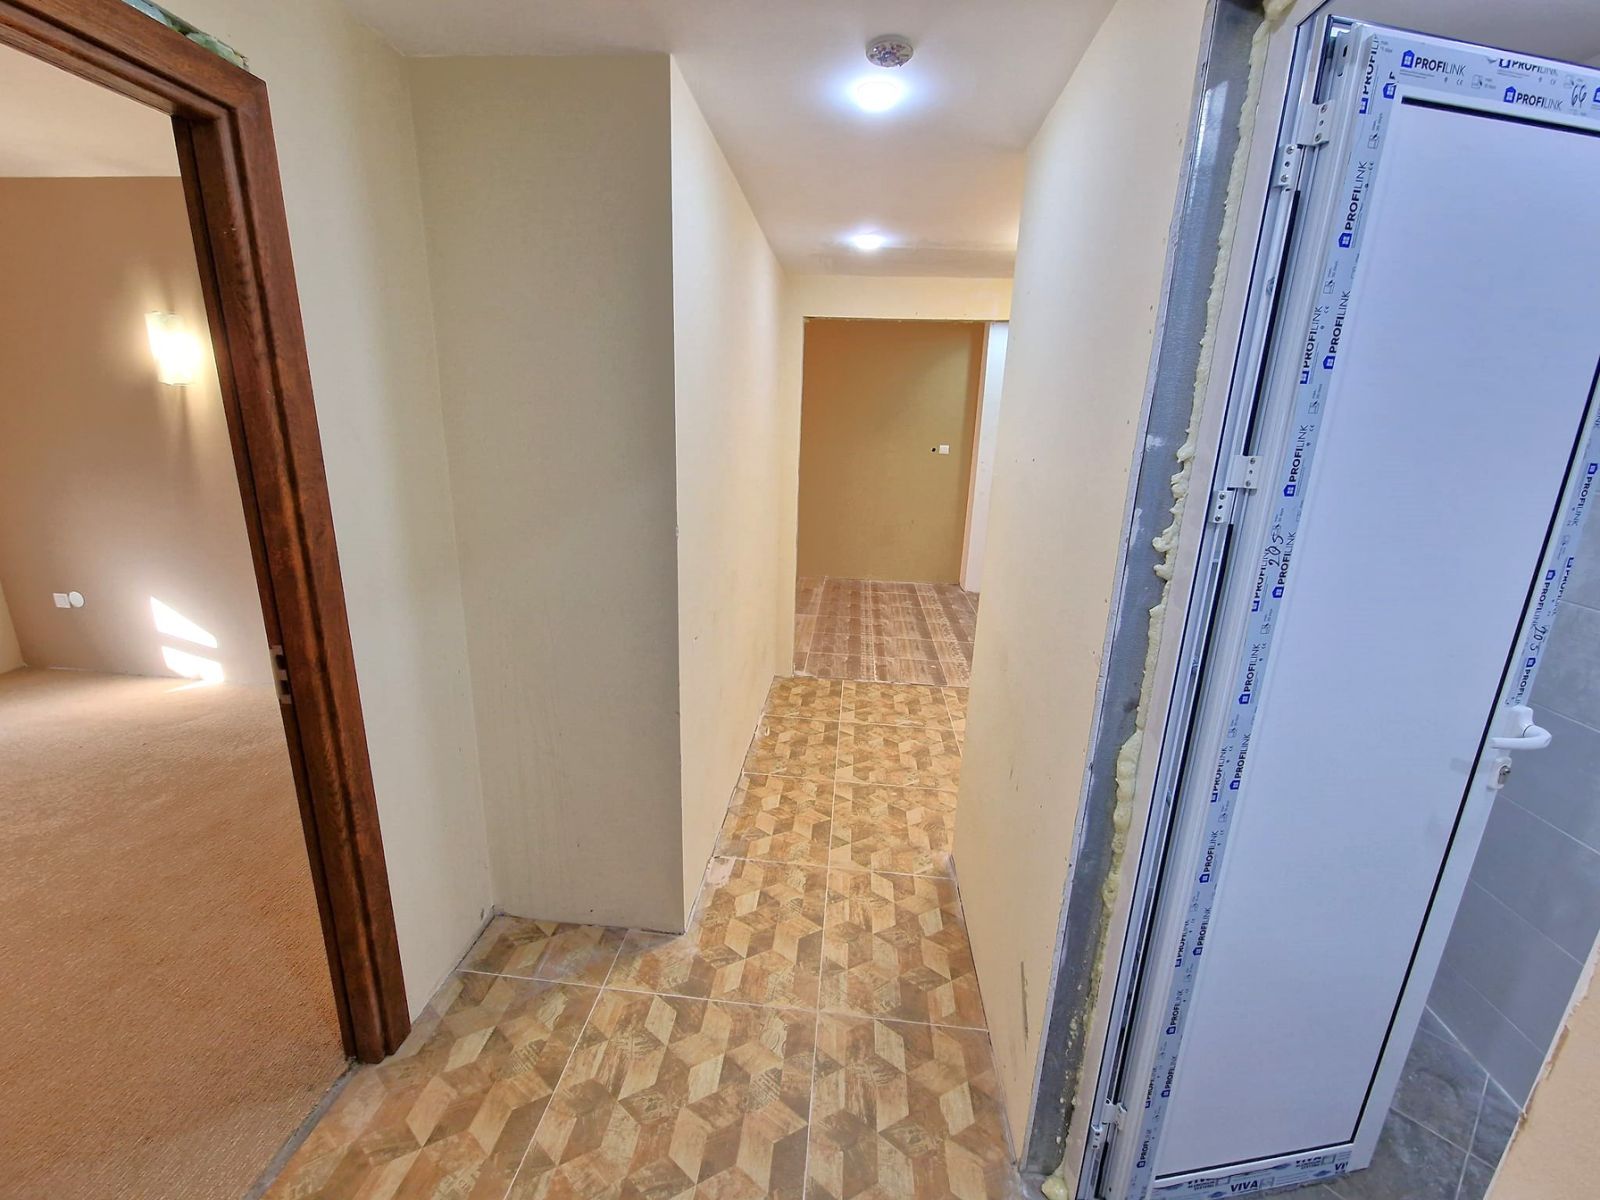 Банско: Продается трехкомнатная квартира в жилом доме с низкой арендной платой